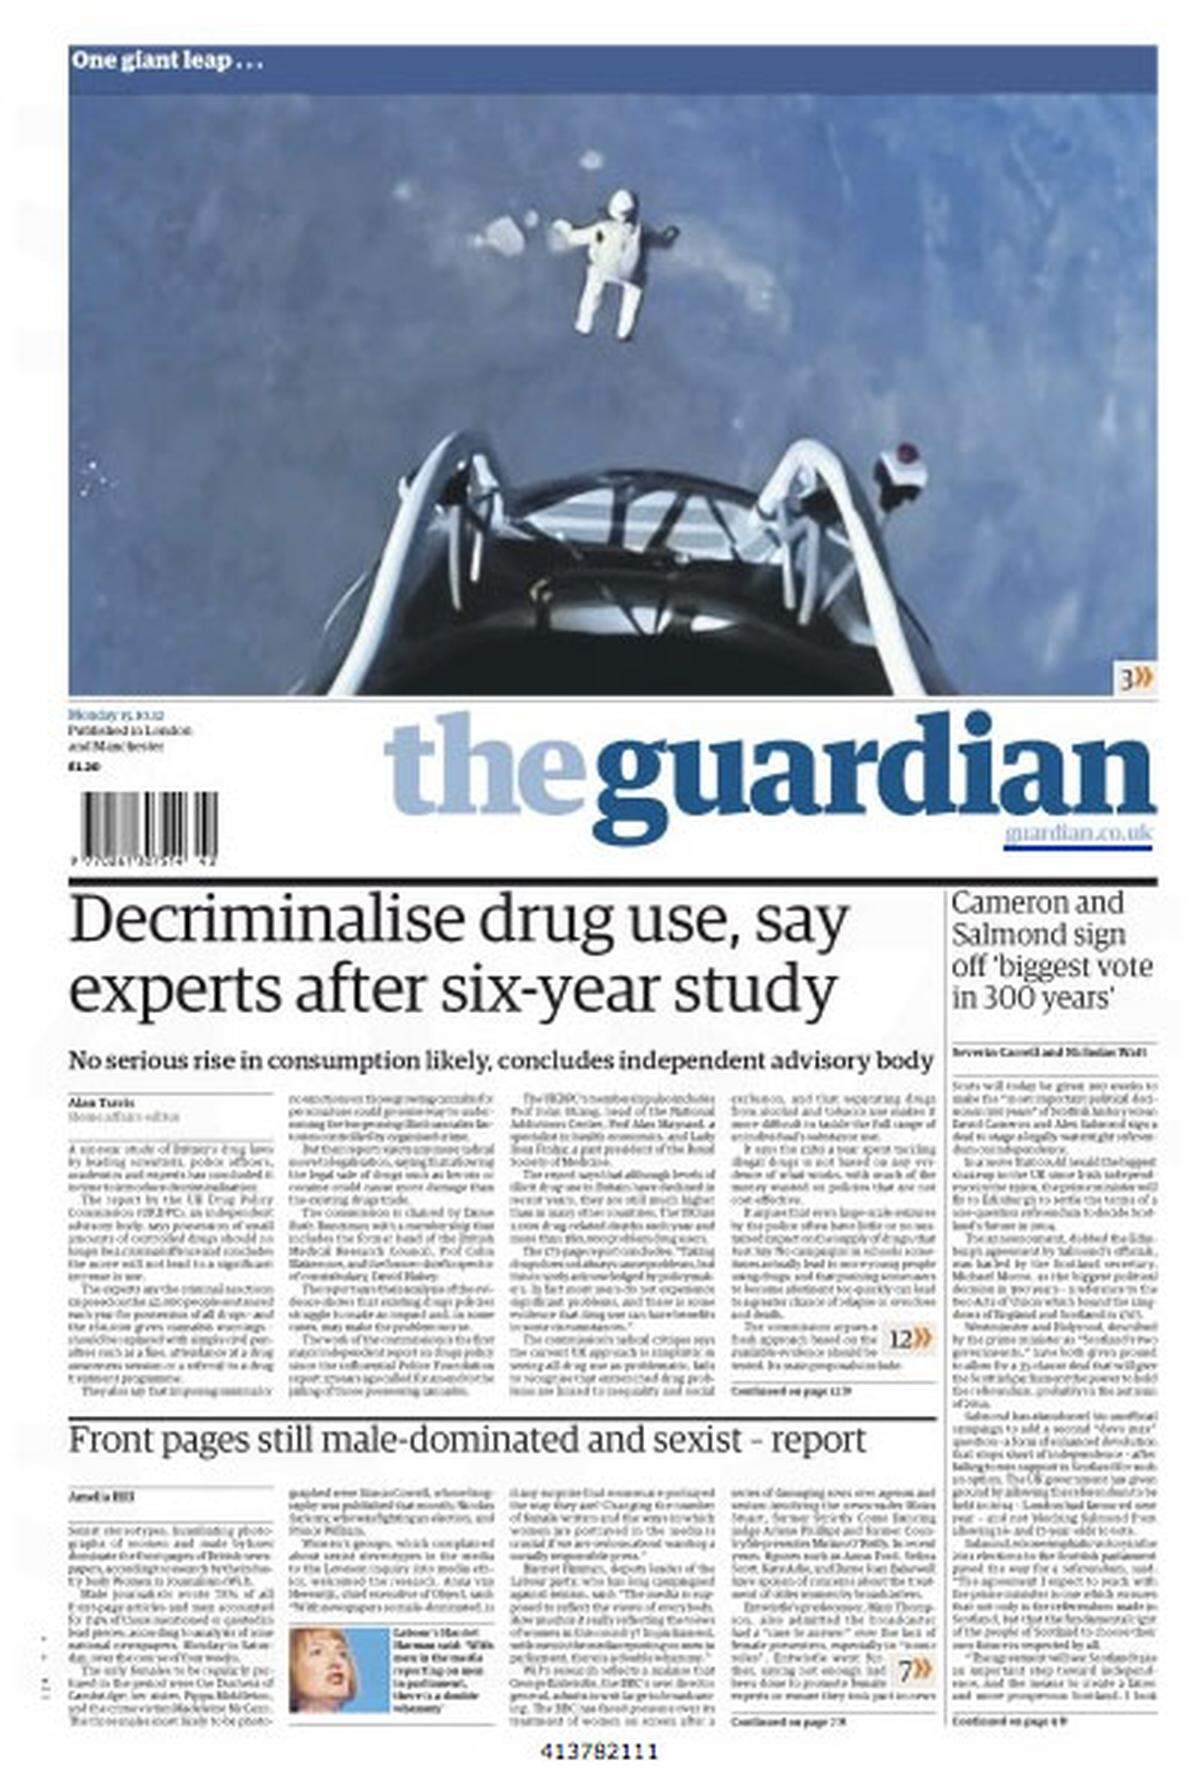 "One giant leap" - in der Print-Ausgabe des englischen "Guardian". gab es zuvor nur eine knappe Schlagzeile und ein großes Bild.